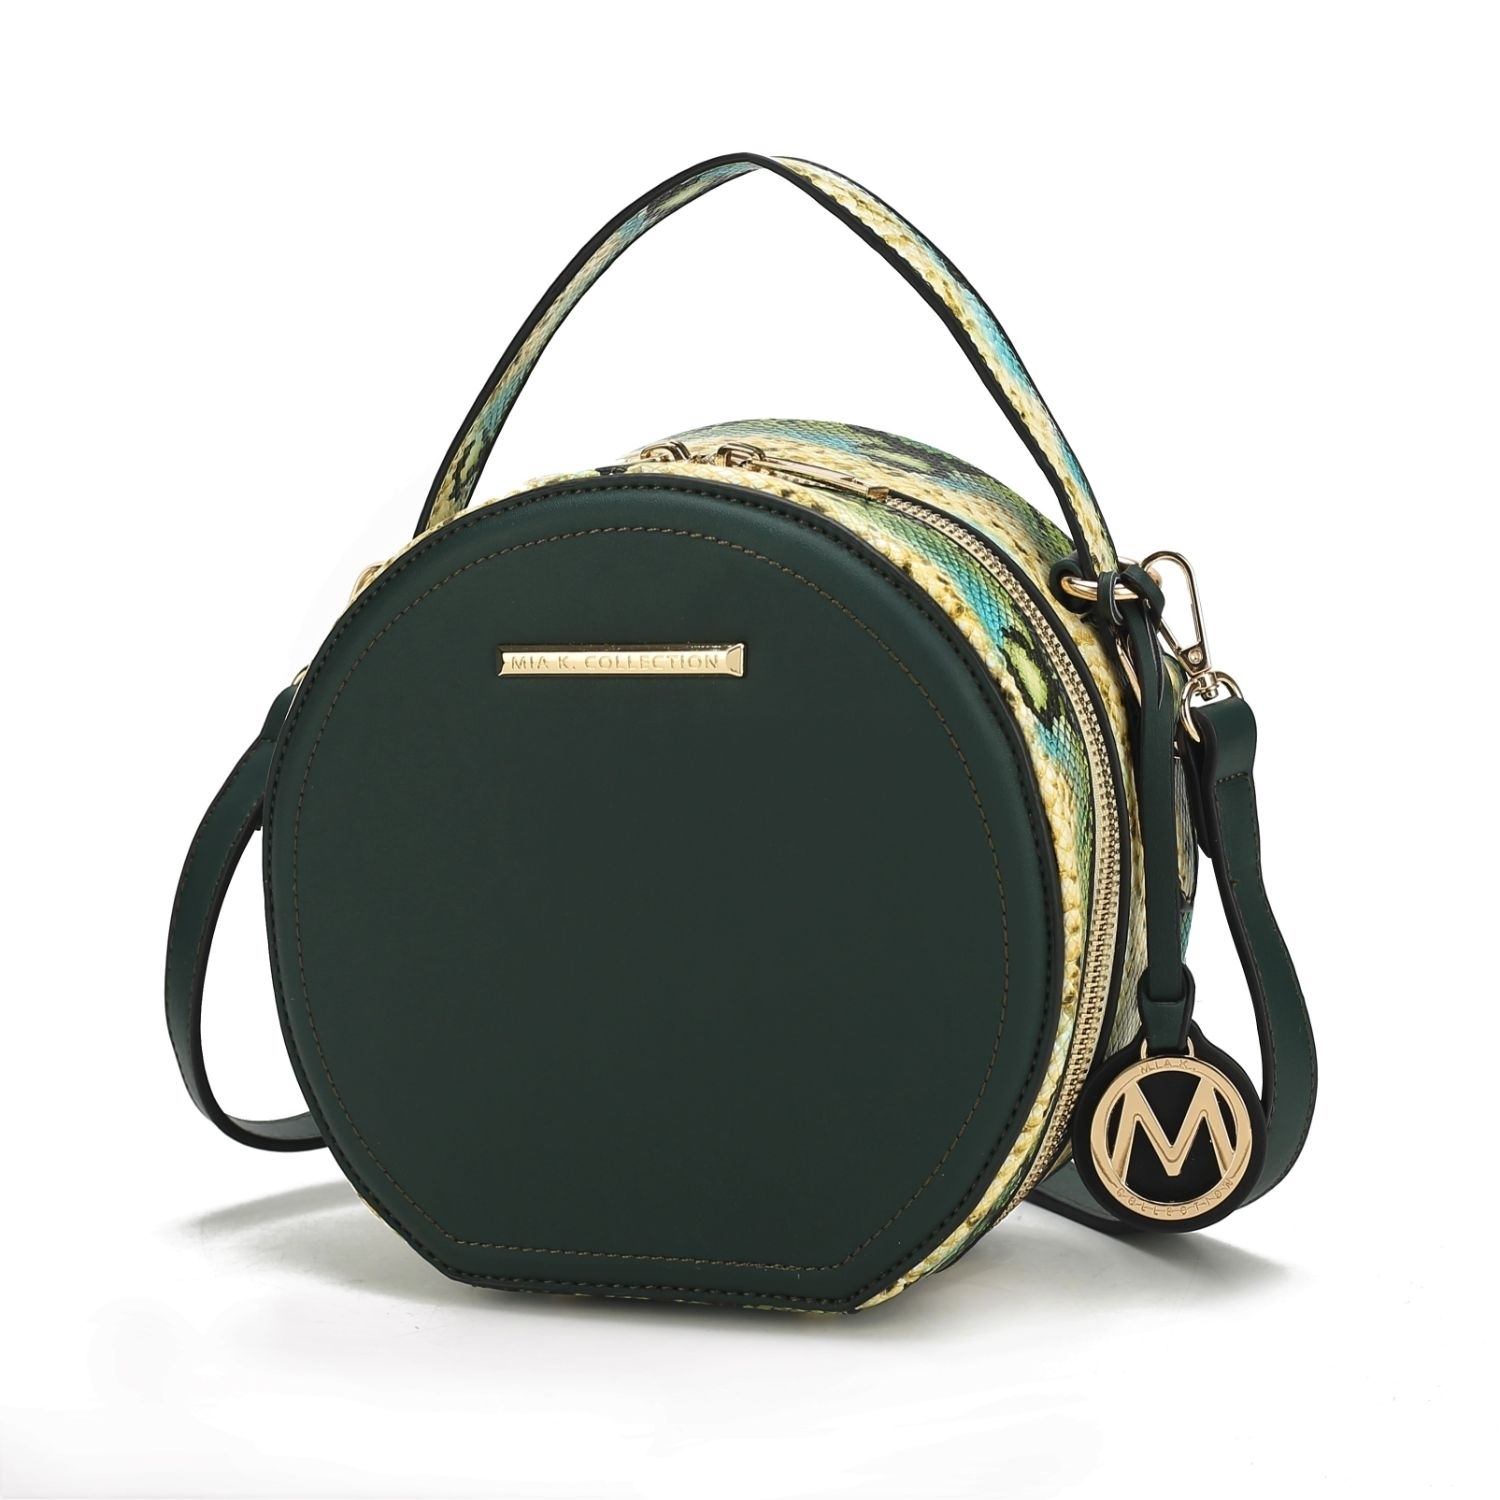 MKF Collection Mallory Handbag Crossbody By Mia K. - Olive